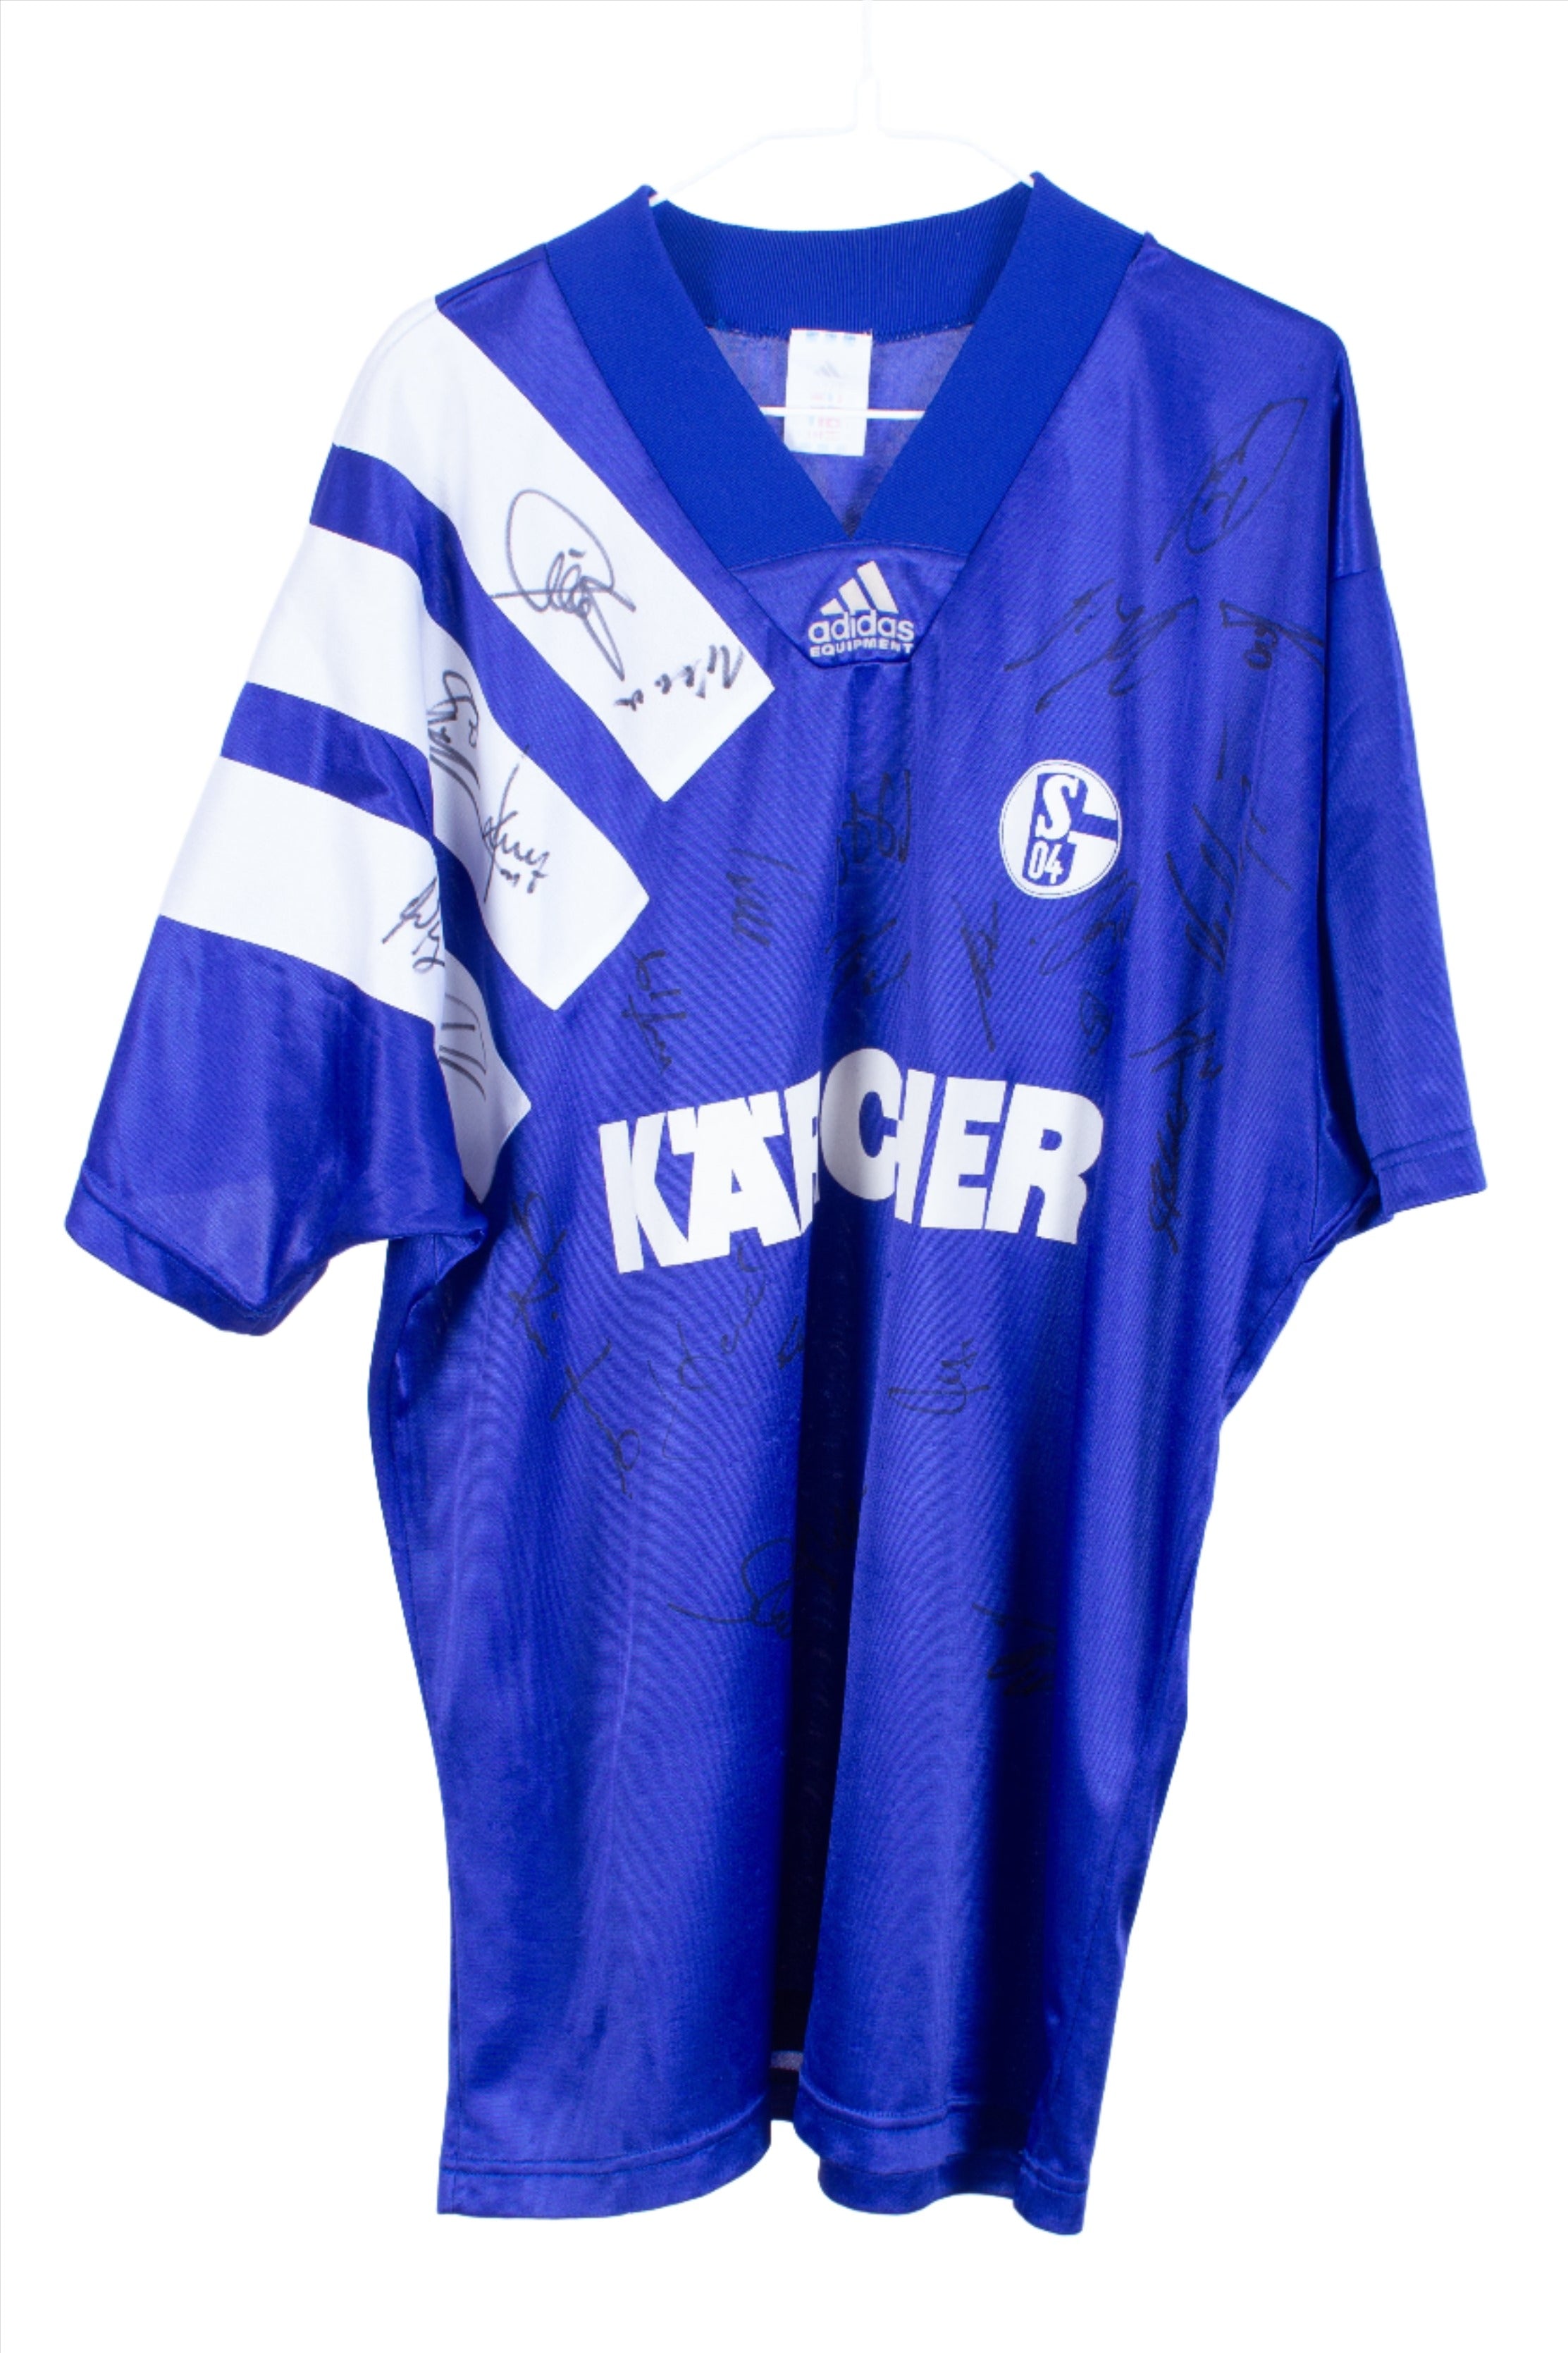 Schalke 04 1994/96 Home Shirt *Signed* (XL)